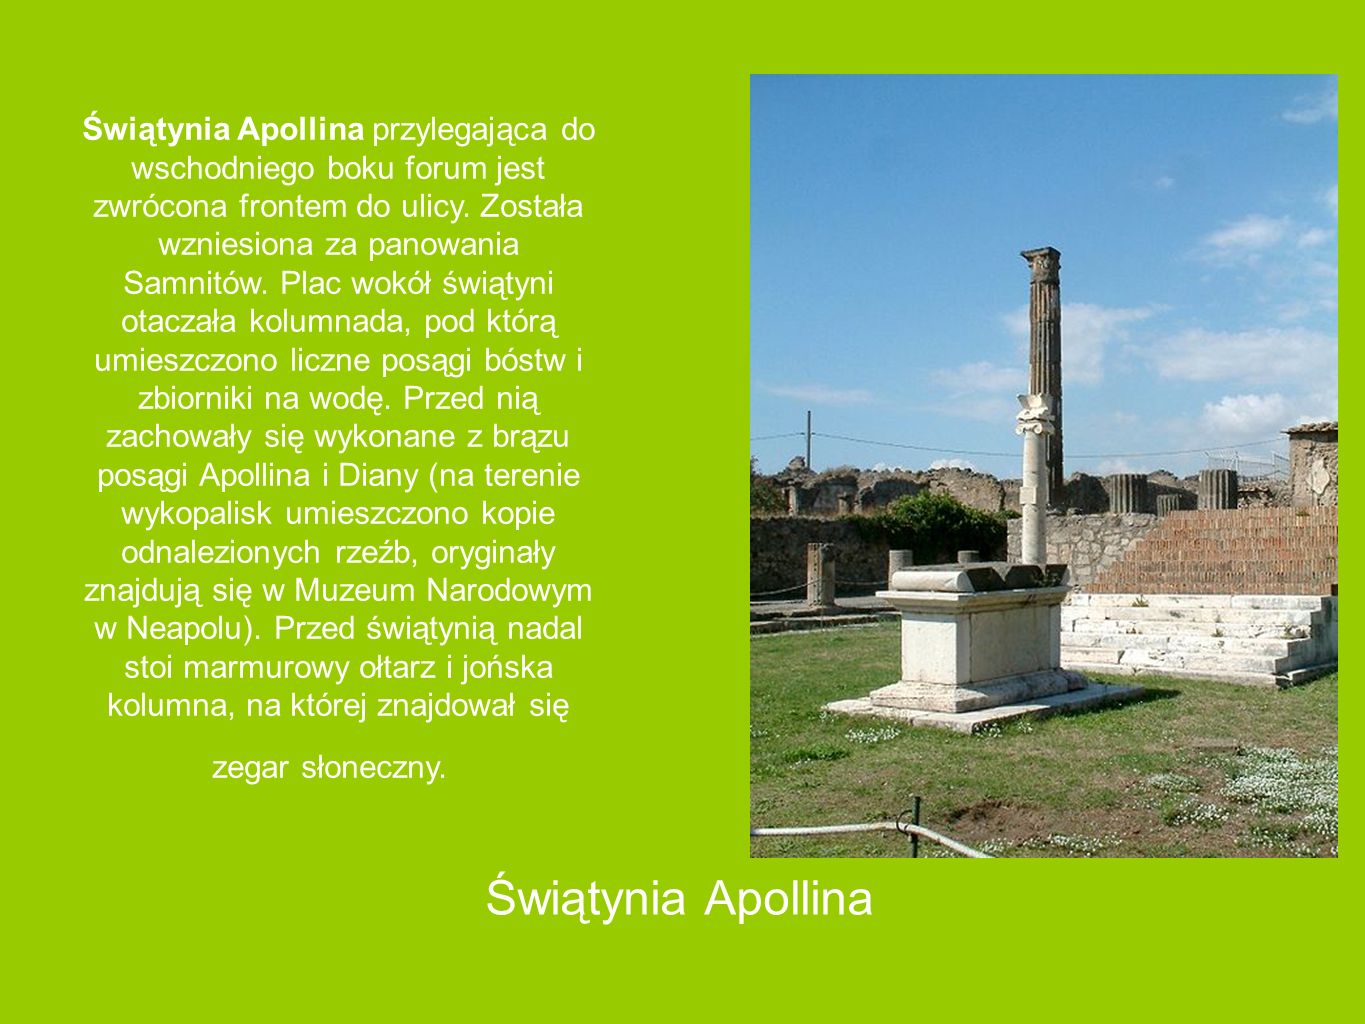 Świątynia Apollina przylegająca do wschodniego boku forum jest zwrócona frontem do ulicy. Została wzniesiona za panowania Samnitów. Plac wokół świątyni otaczała kolumnada, pod którą umieszczono liczne posągi bóstw i zbiorniki na wodę. Przed nią zachowały się wykonane z brązu posągi Apollina i Diany (na terenie wykopalisk umieszczono kopie odnalezionych rzeźb, oryginały znajdują się w Muzeum Narodowym w Neapolu). Przed świątynią nadal stoi marmurowy ołtarz i jońska kolumna, na której znajdował się zegar słoneczny.